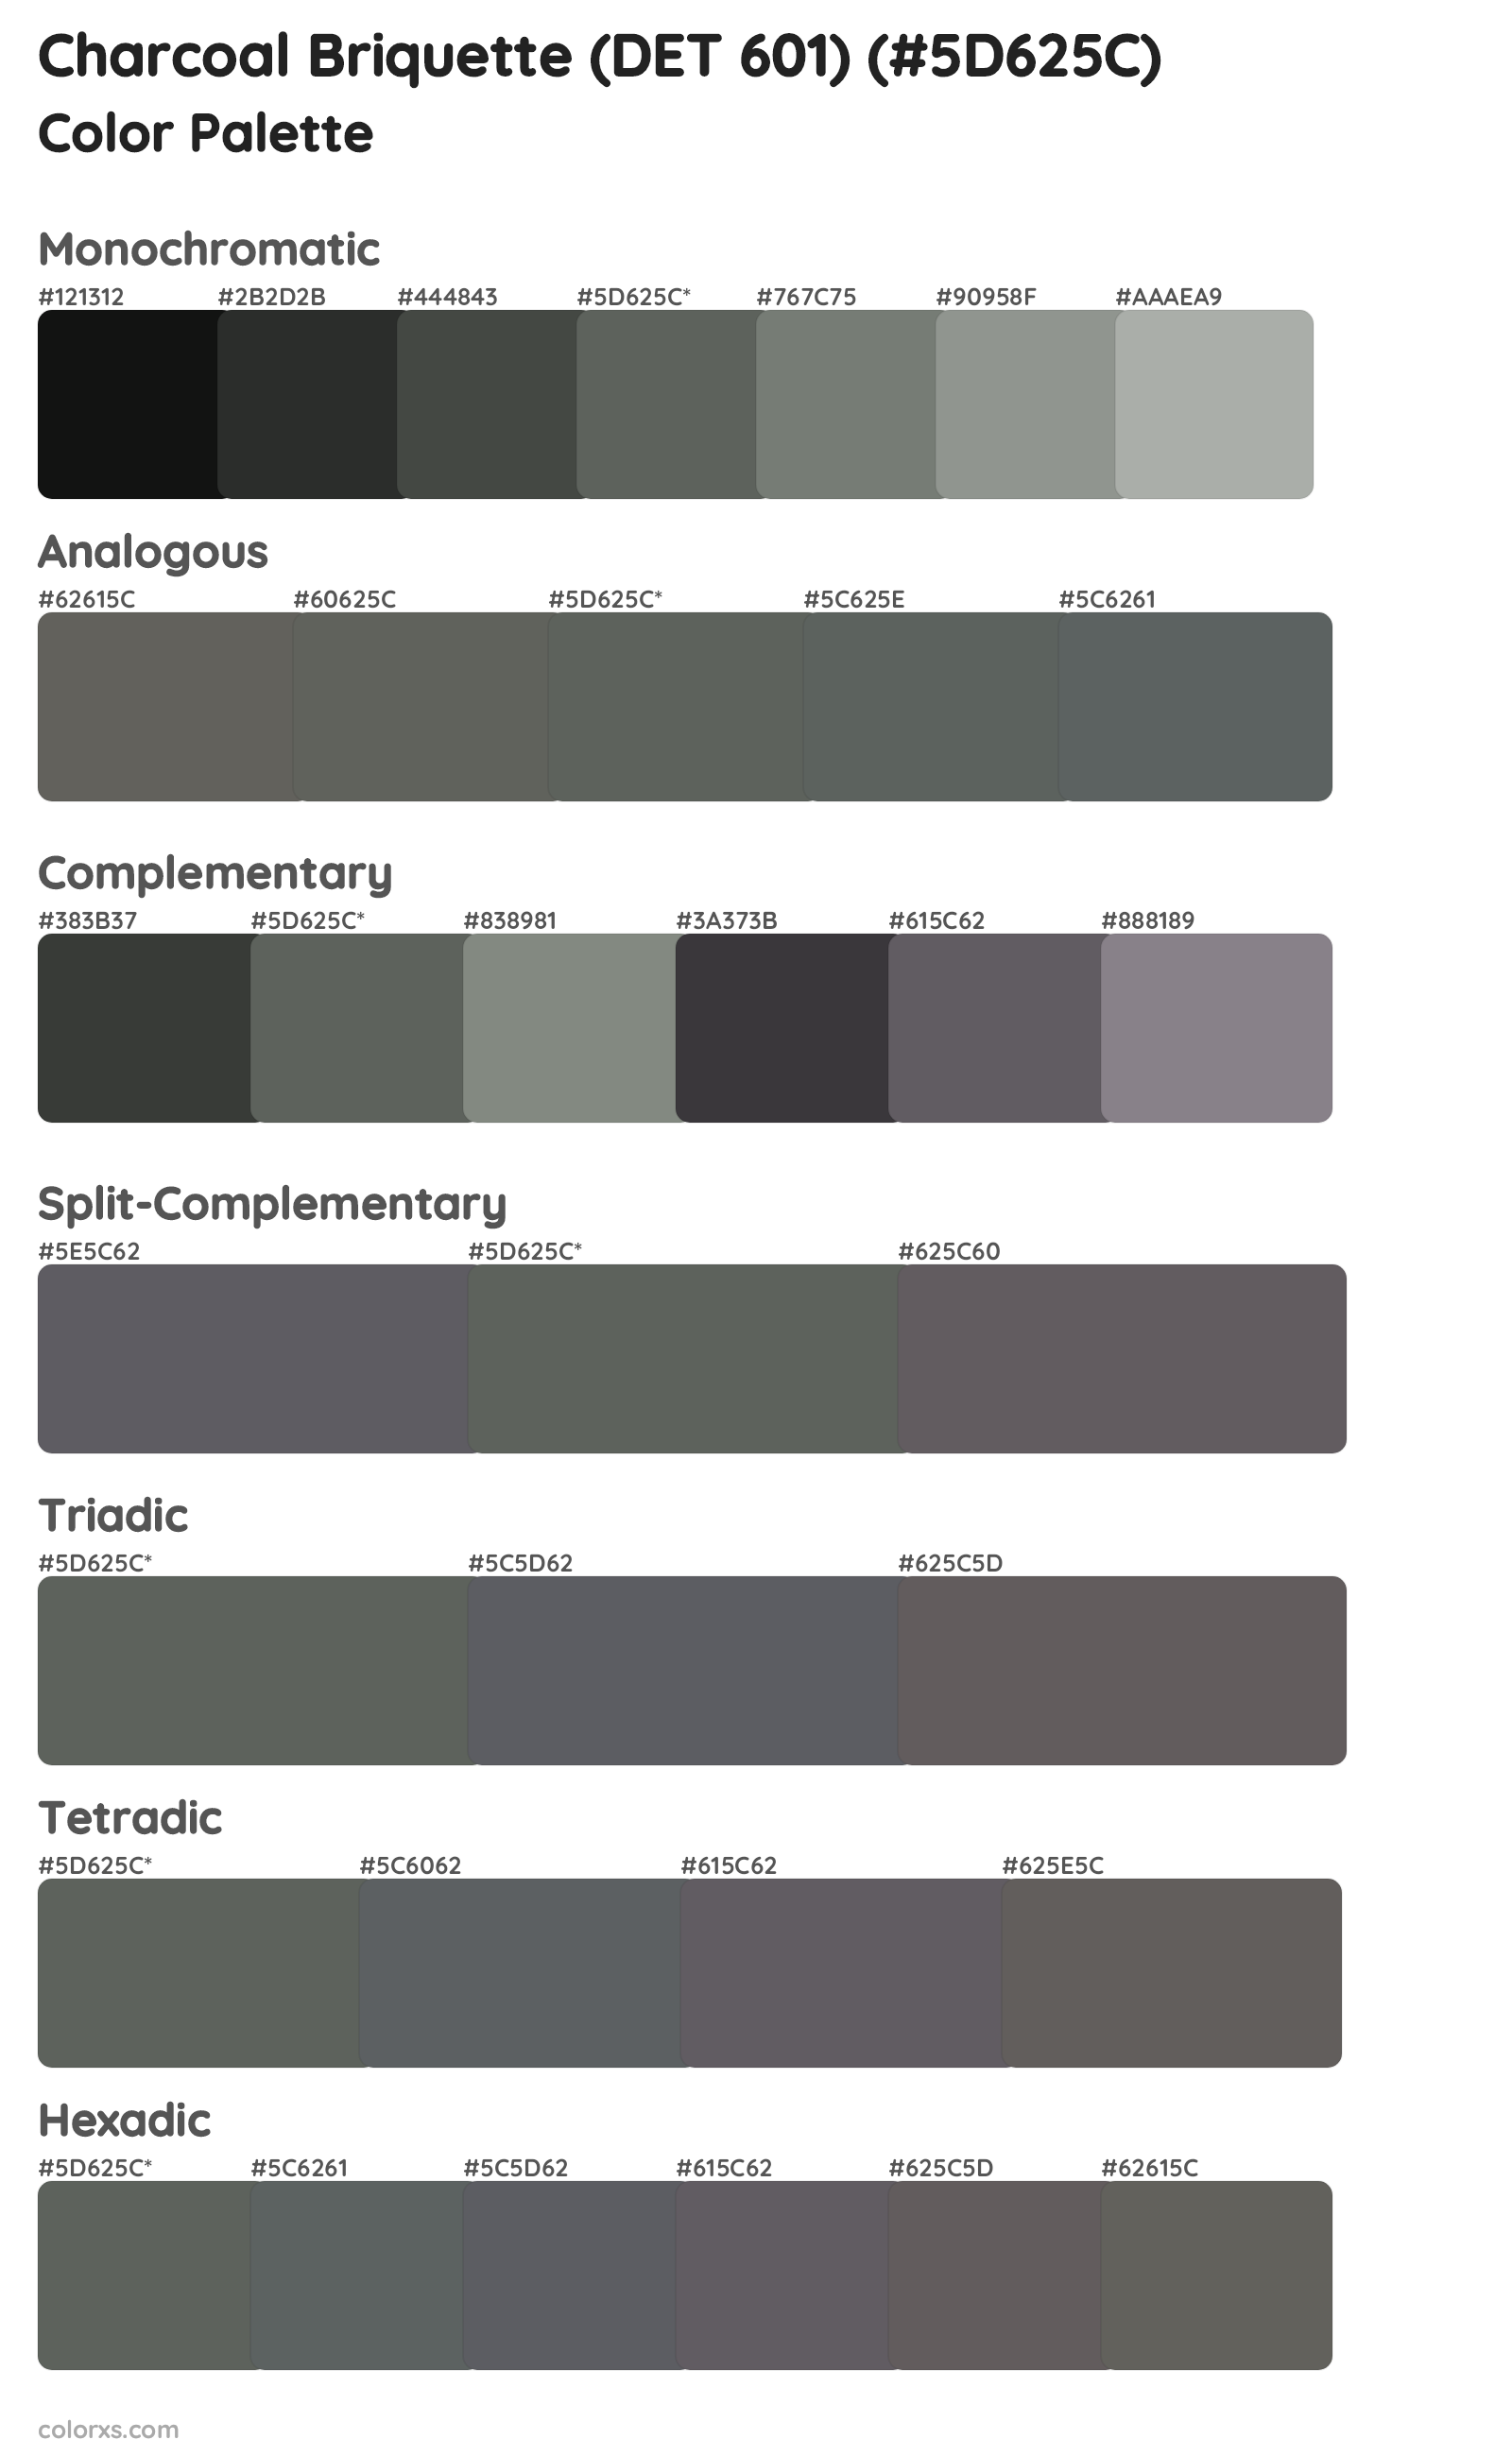 Charcoal Briquette (DET 601) Color Scheme Palettes